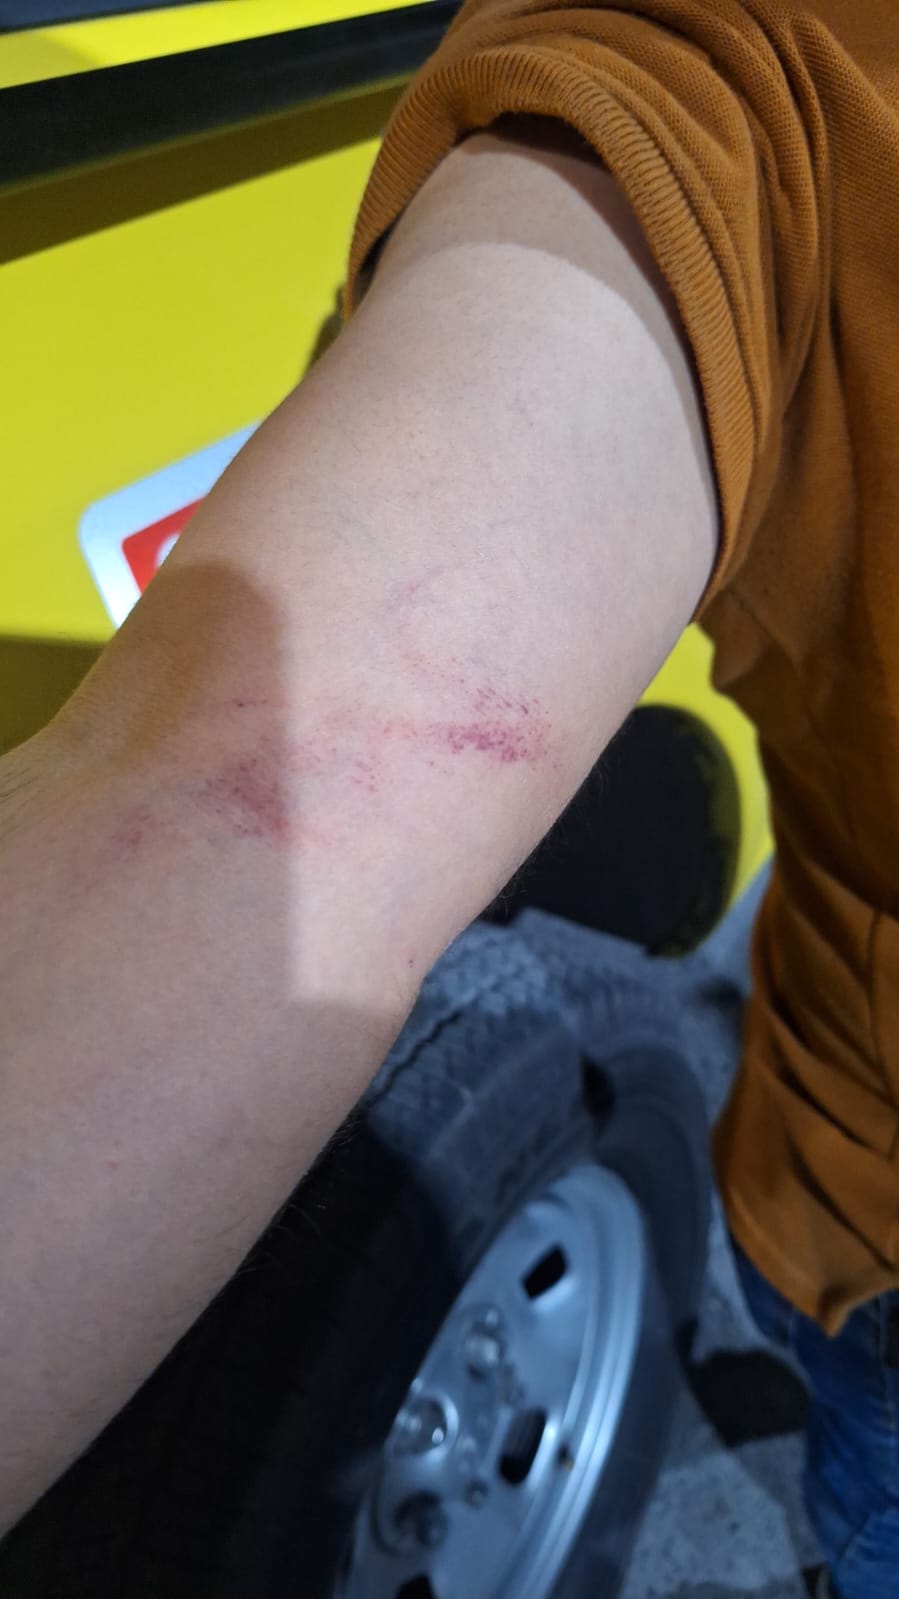 La víctima contó que los jóvenes comenzarón a golpearlo y le causaron heridas en su brazo. Foto: Policía de Monterrey.